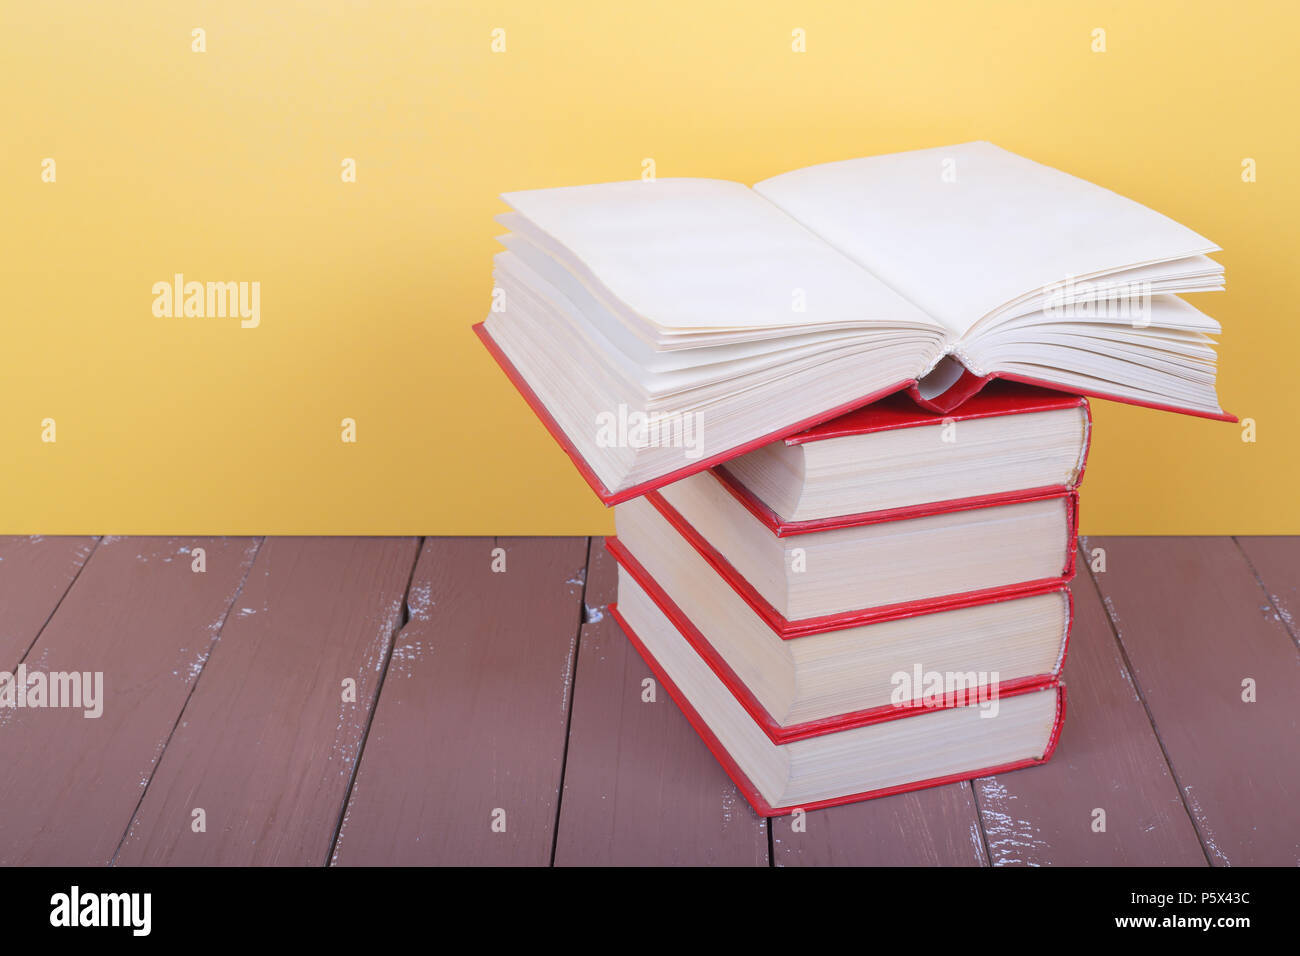 Wissenschaft und Bildung - Stapel Gruppe von roten Bücher einer leeren, oben offenen Vorderansicht auf dem Holztisch und gelben Hintergrund. Stockfoto